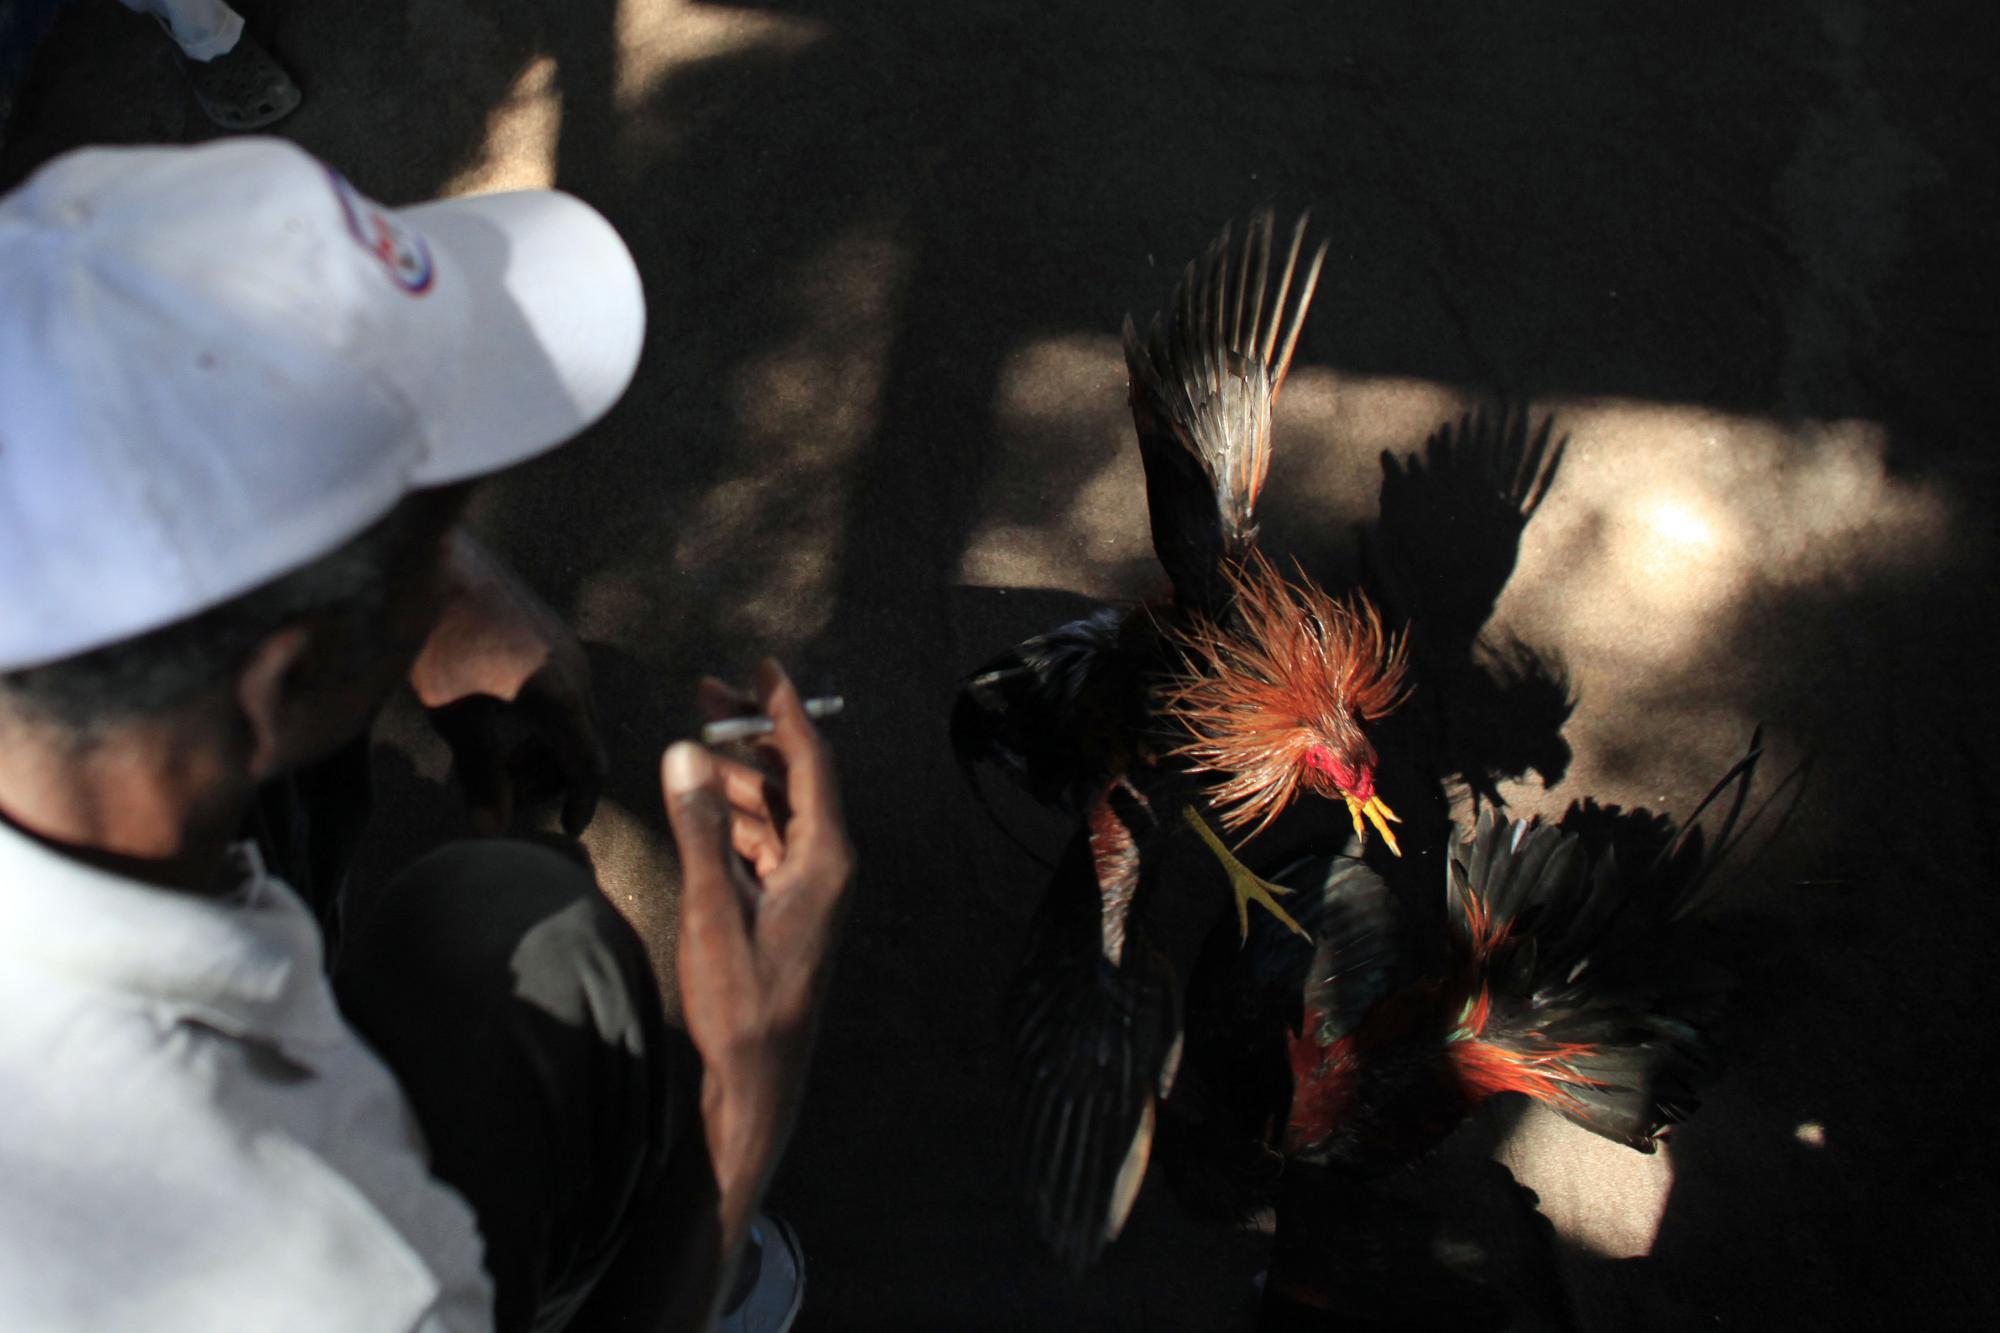 En esta imagen, tomada el 31 de octubre de 2015, un hombre observa una pelea de gallos en el recinto de Morne Hercule, en Petion-Ville, Haití. Las peleas de gallos tienen siglos de antigüedad. El combate entre los dos animales suele terminar con la muerte de uno de ellos.